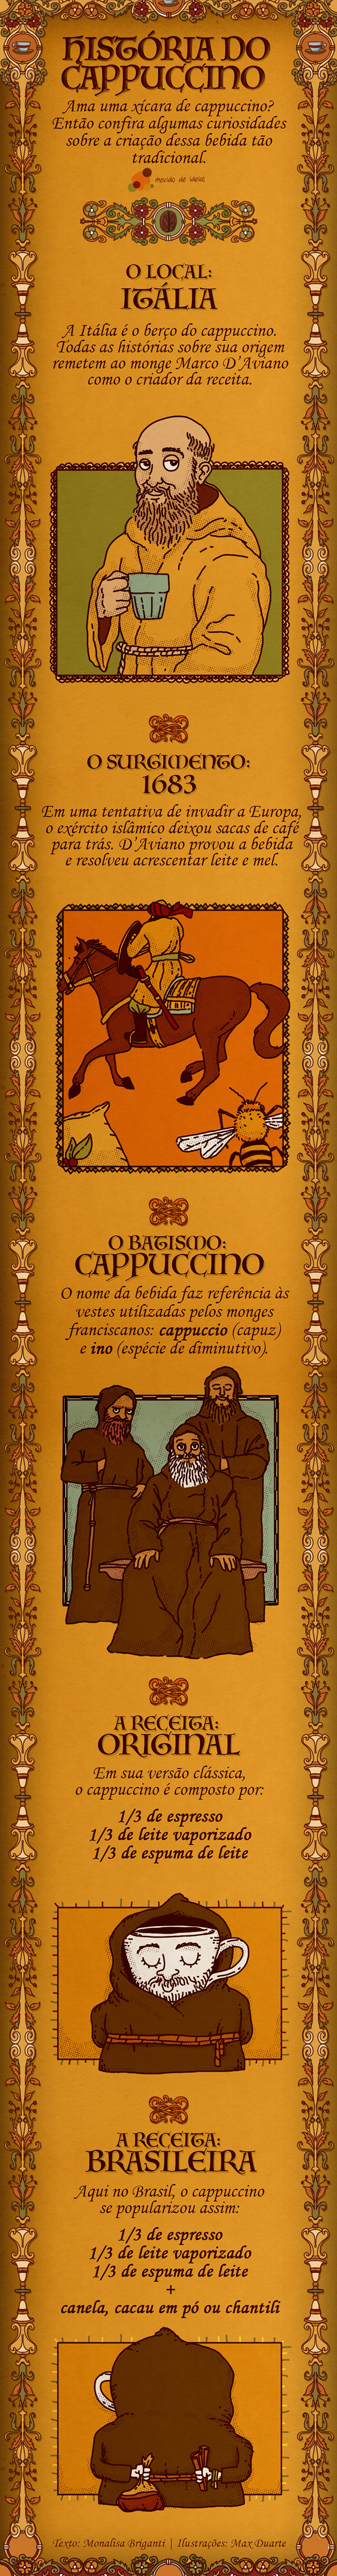 historia-cappuccino